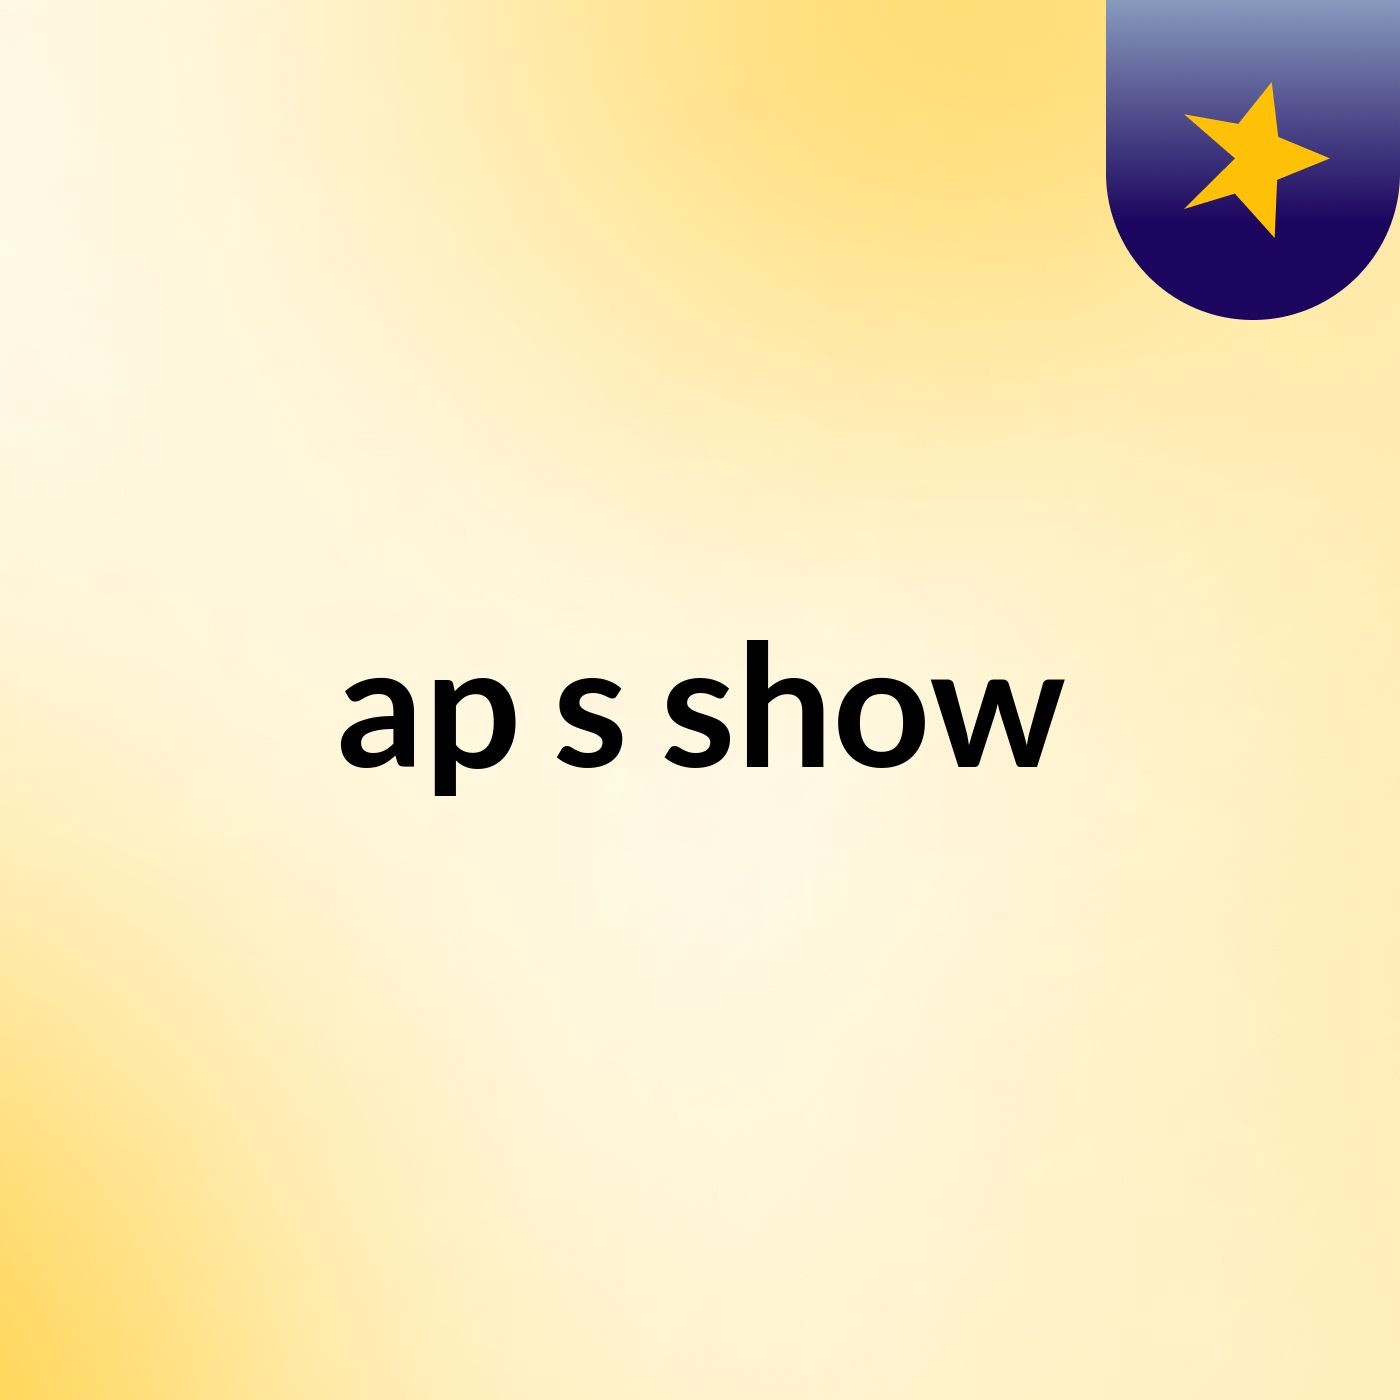 ap's show